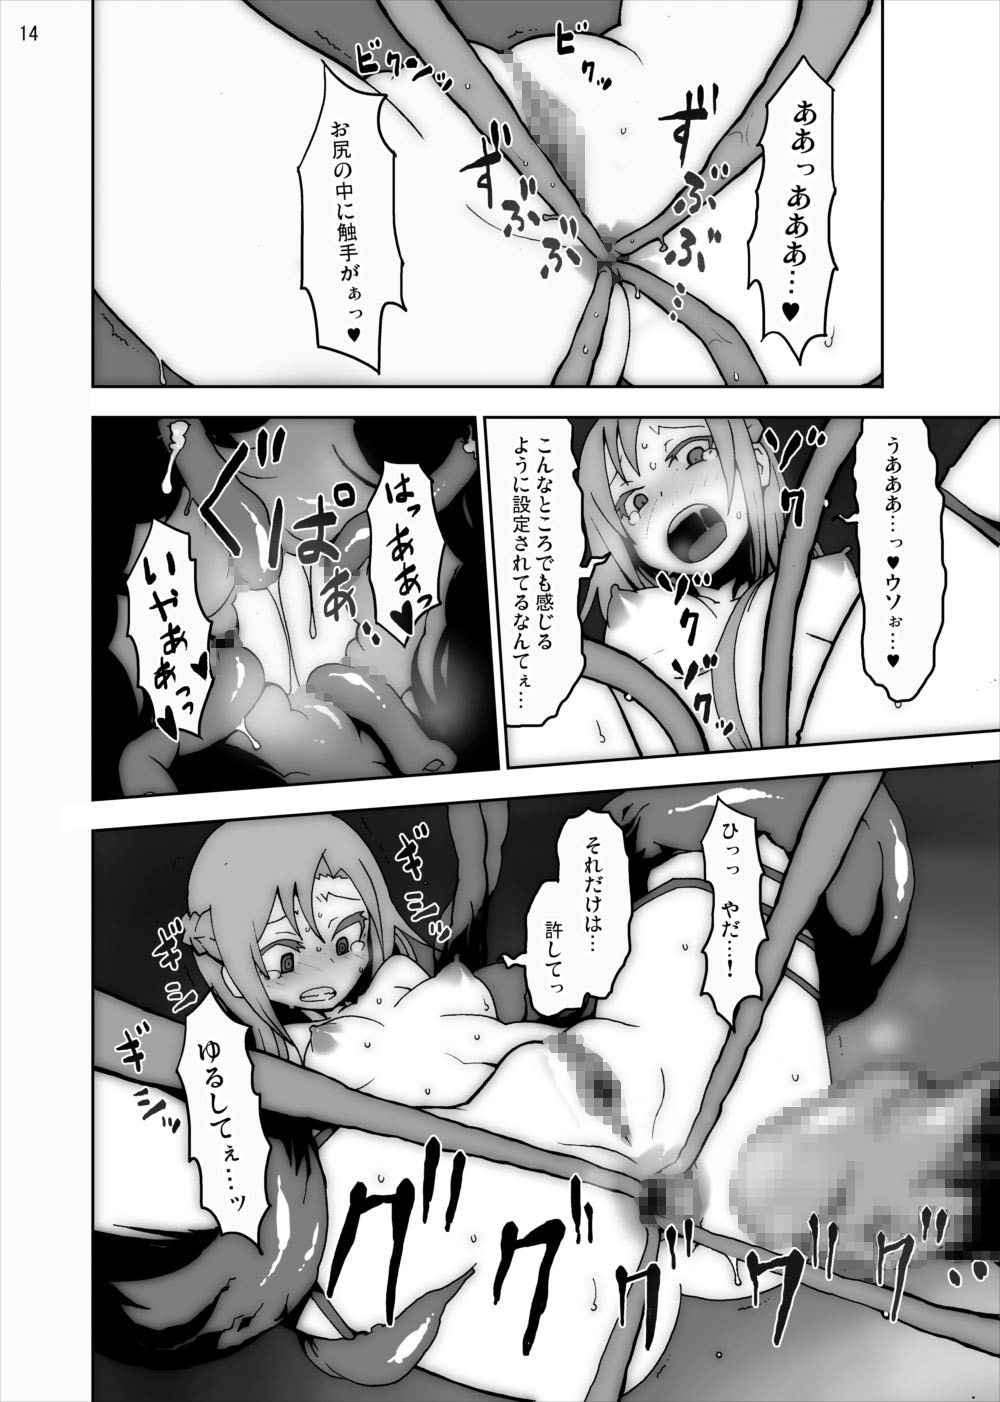 [Studio Nunchaku] Asuna in Tentacle Party Rape Online (Sword Art Online) page 13 full